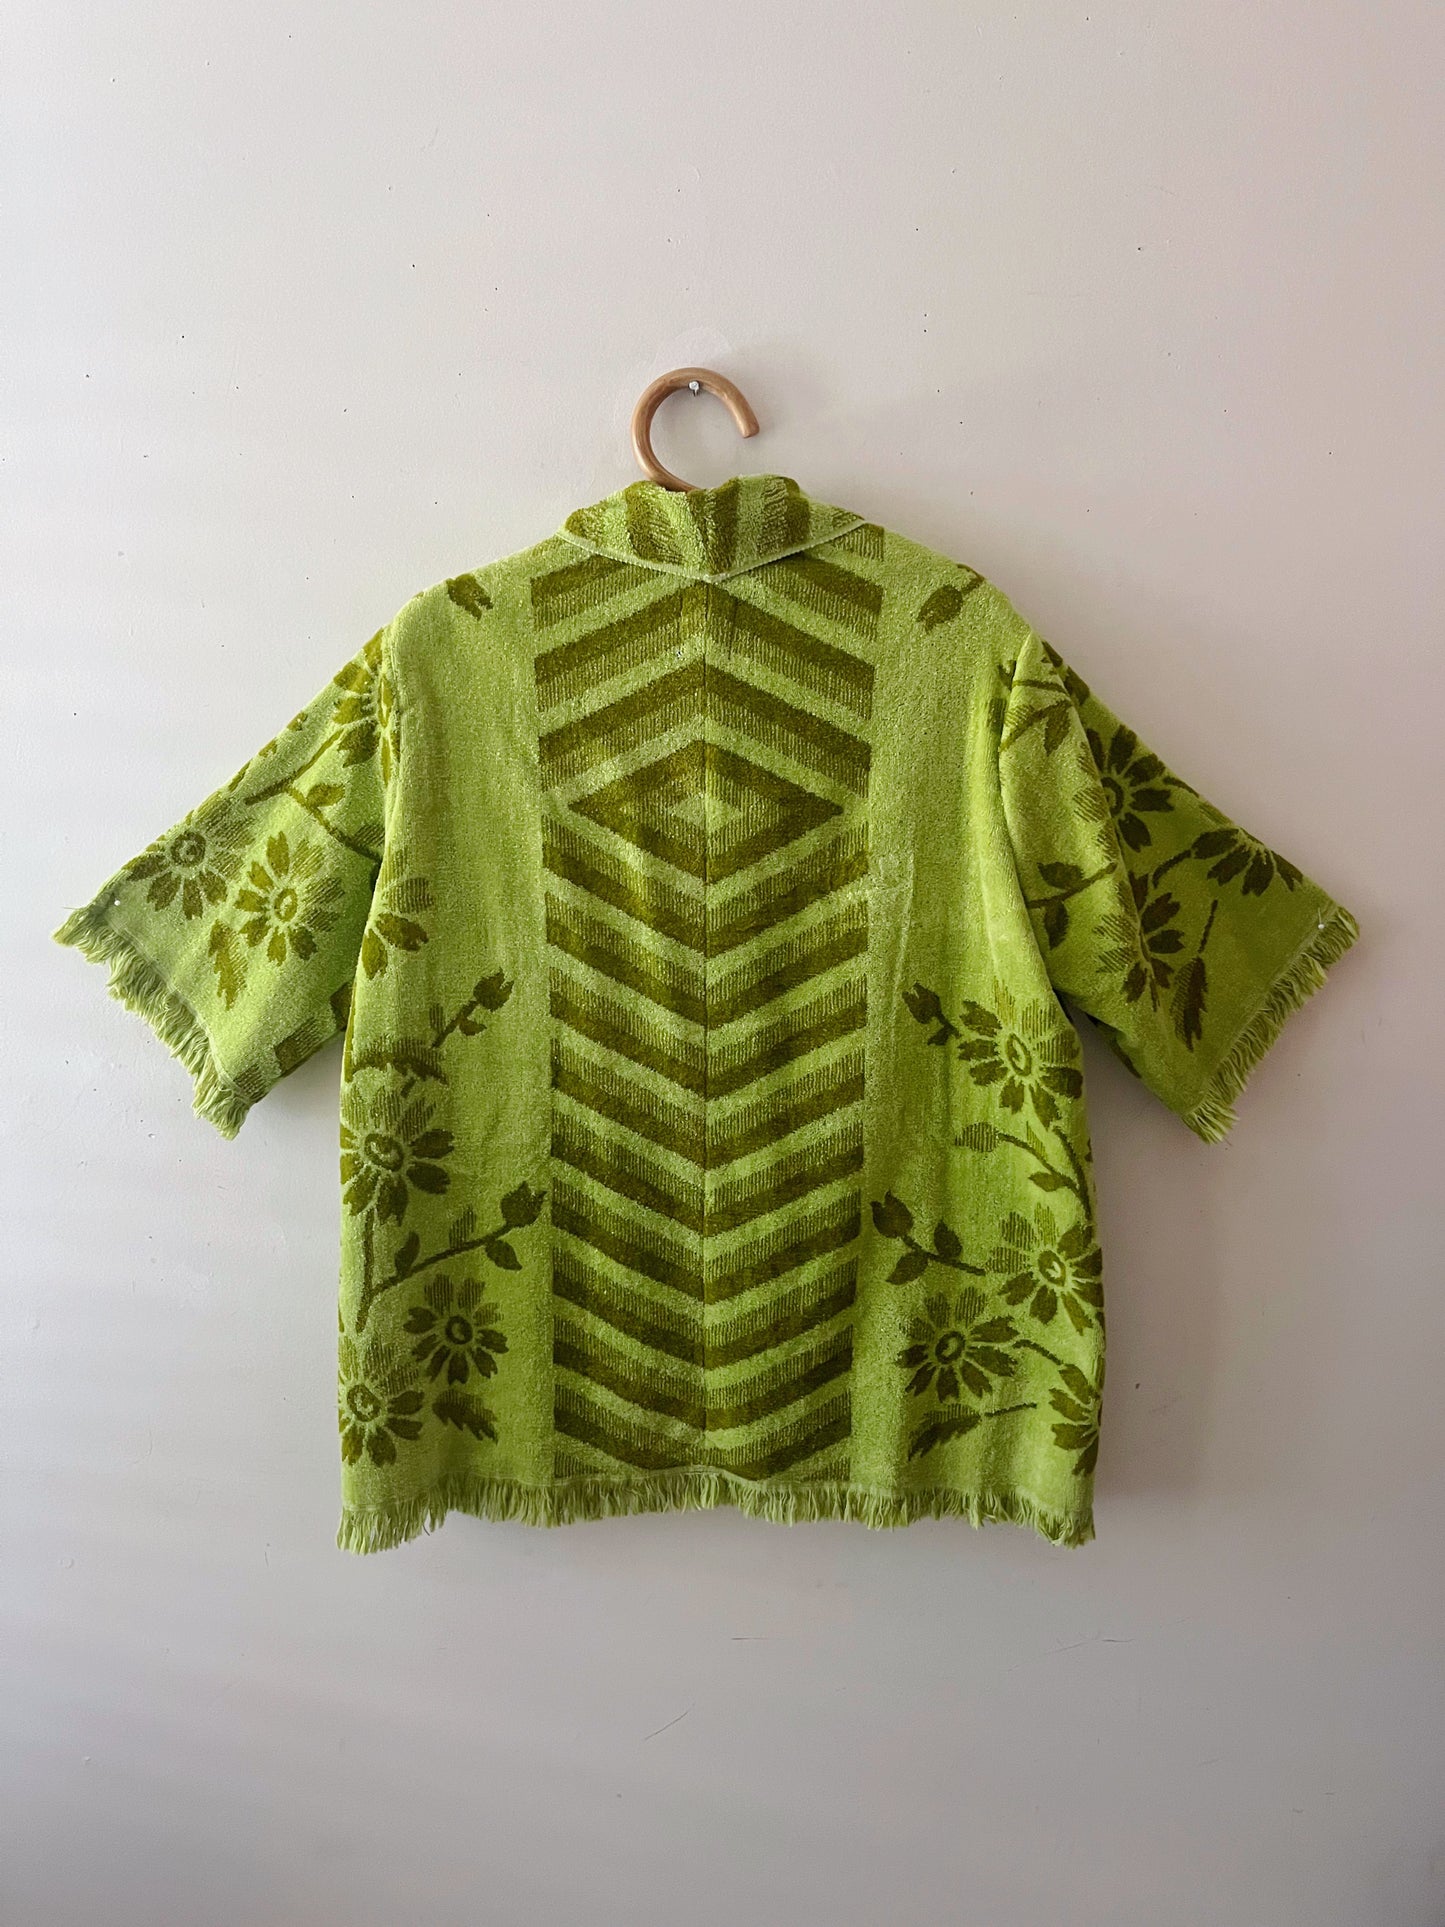 Leafy Greens Open Towel Jacket